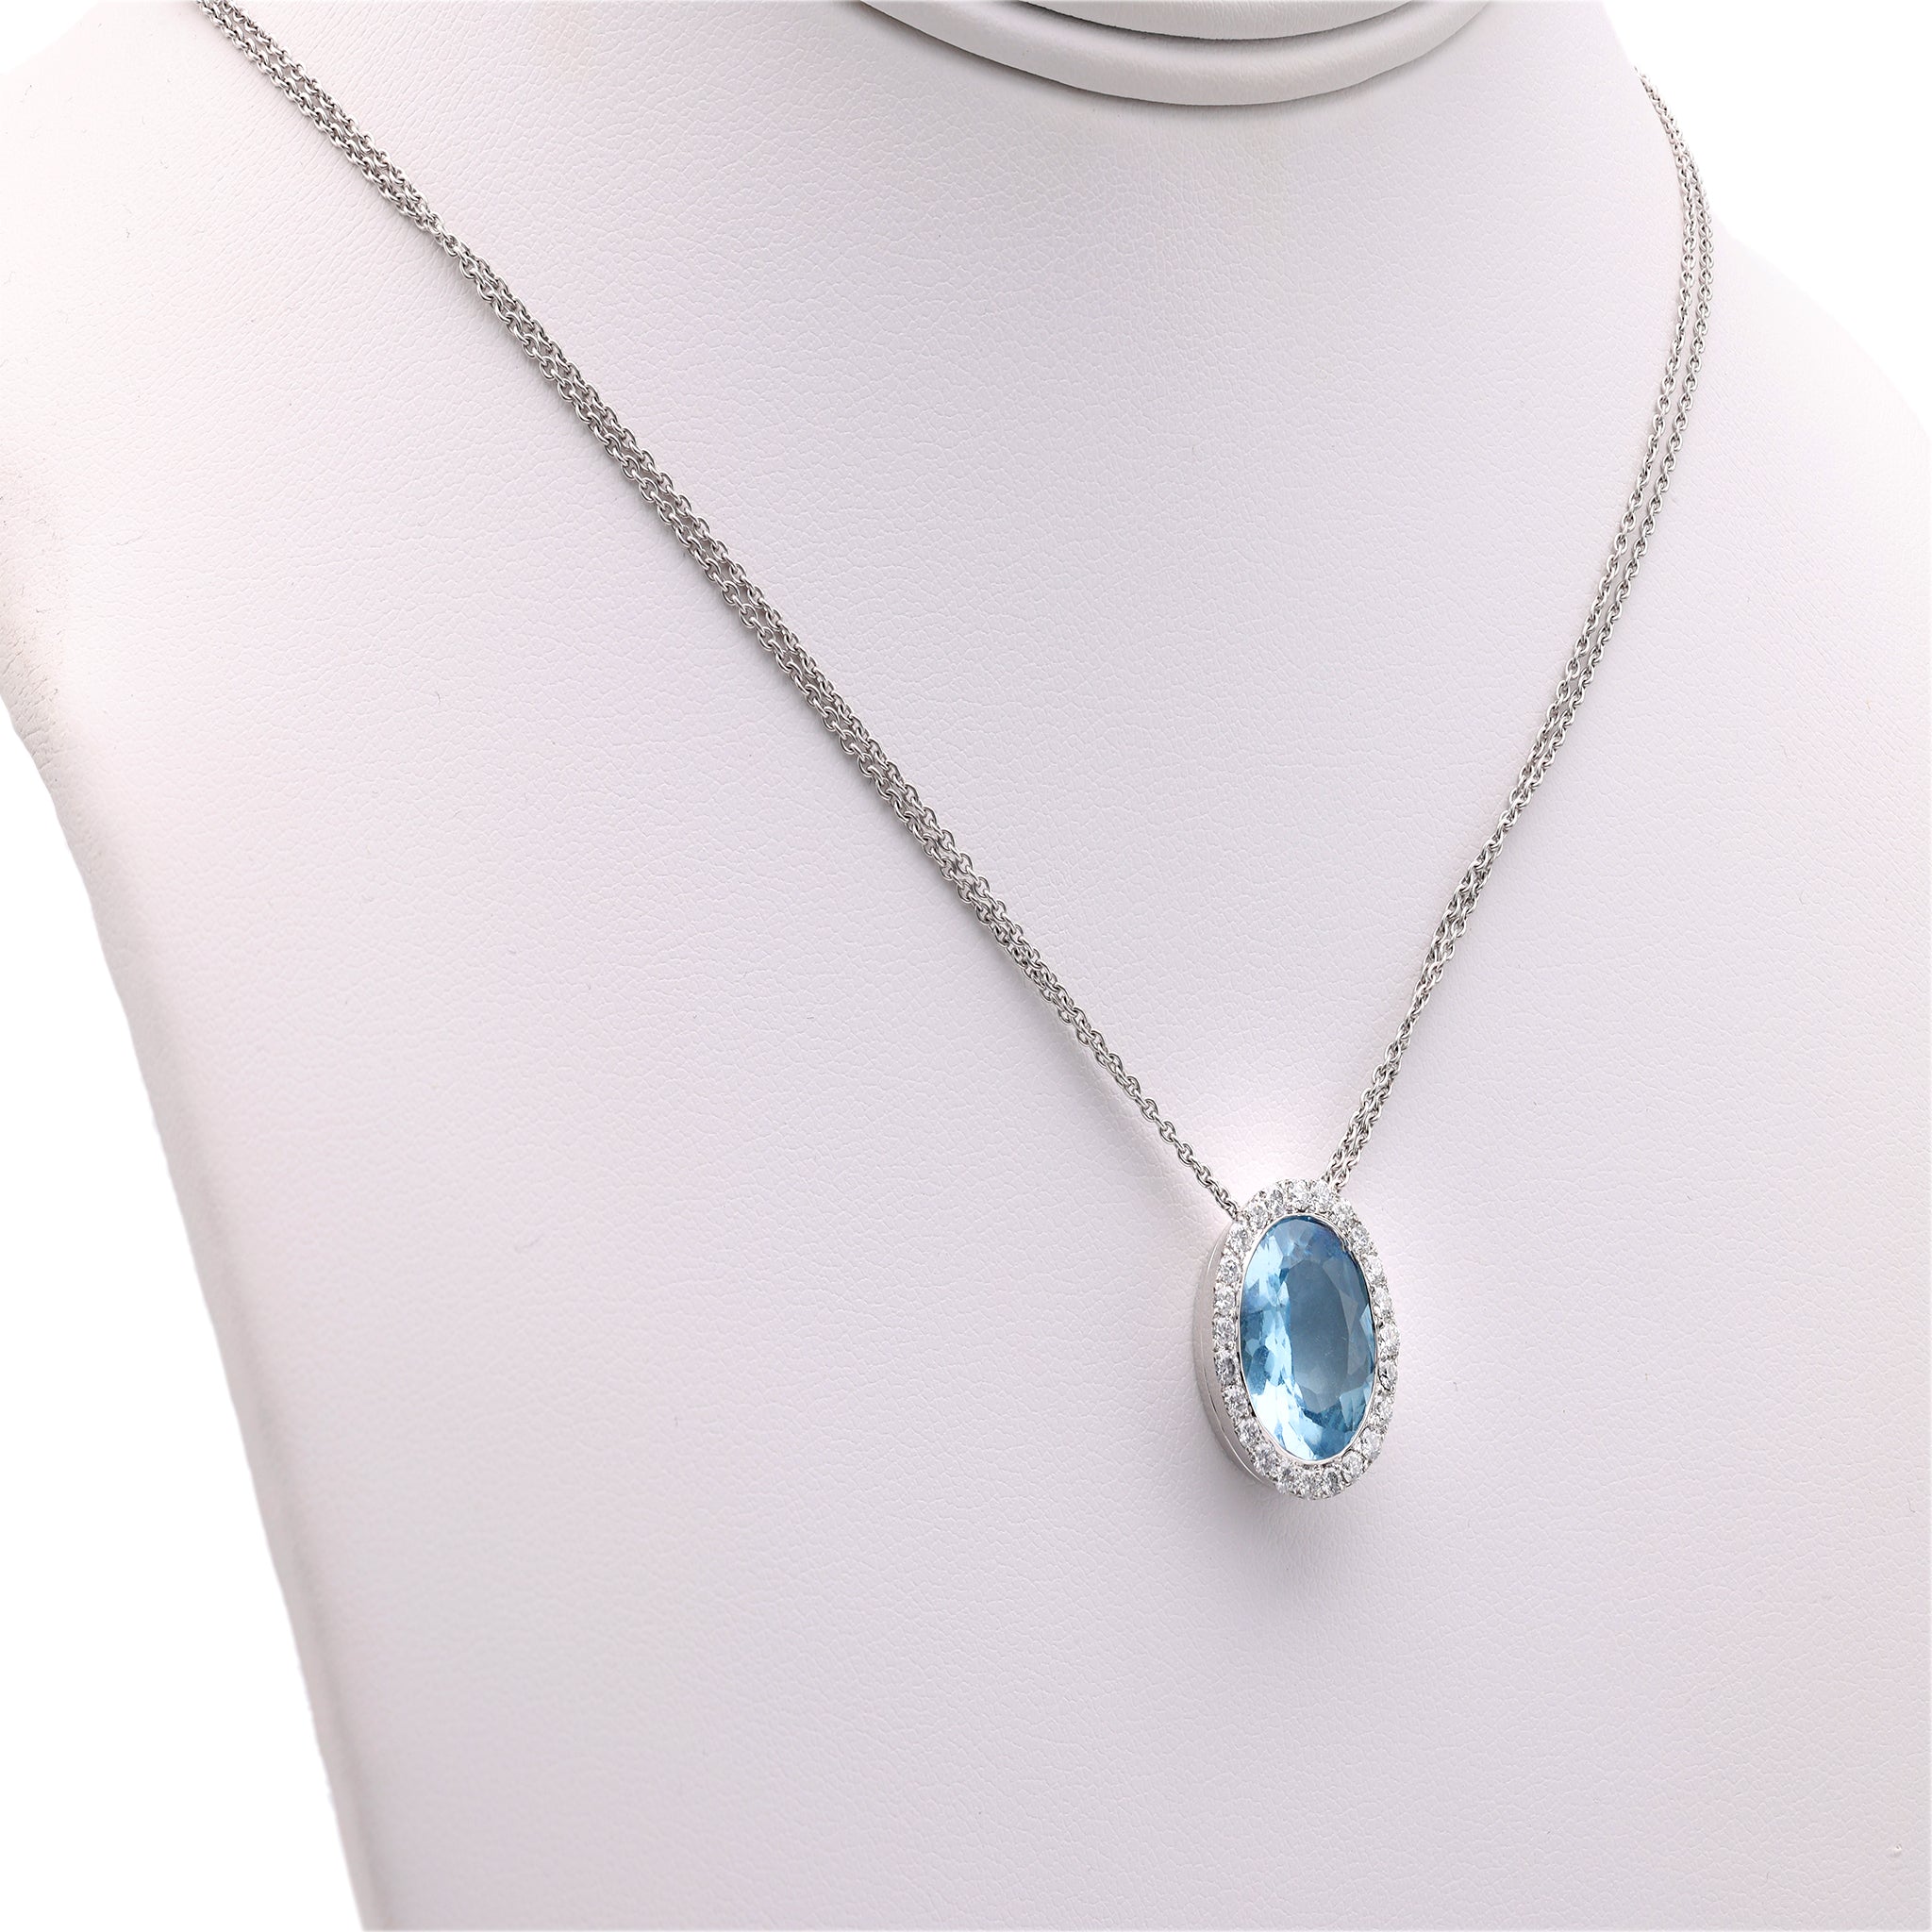 Hans D. Krieger Aquamarine Diamond 18k White Gold Pendant Necklace Necklaces Jack Weir & Sons   